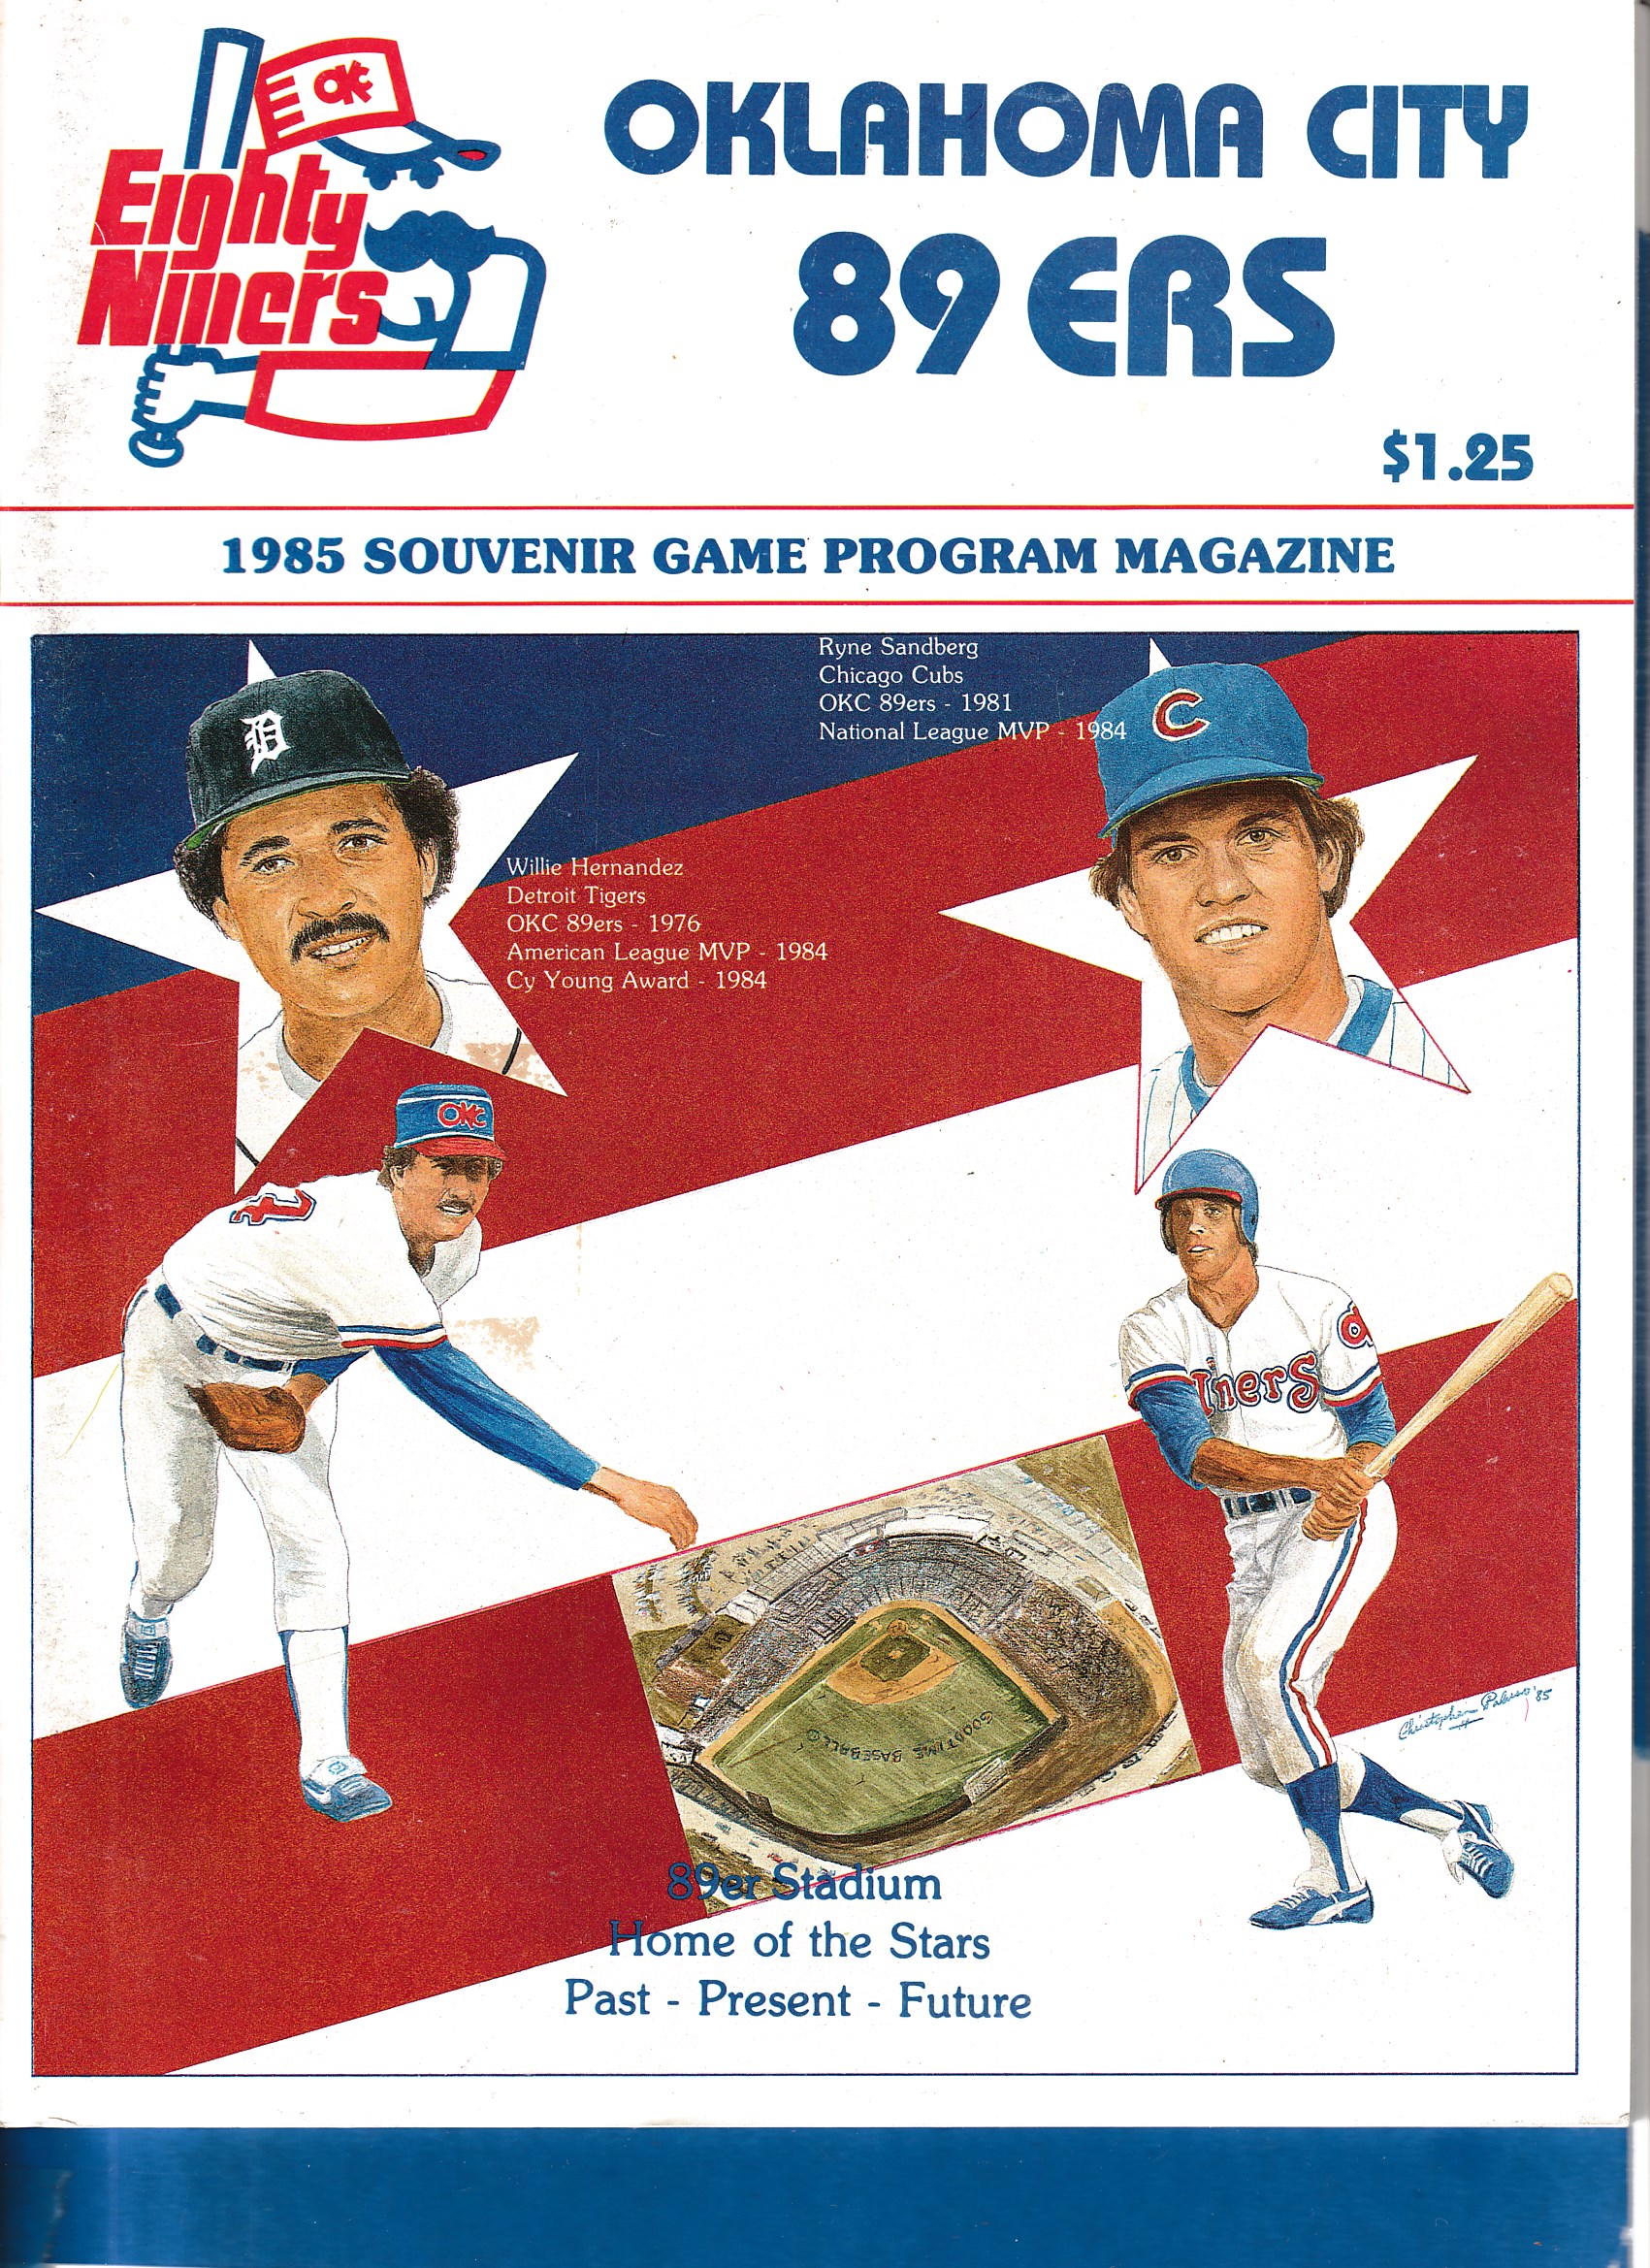 1985 Oklahoma City 89ers Program & Magazine - Ryne Sandberg cover (Cubs)